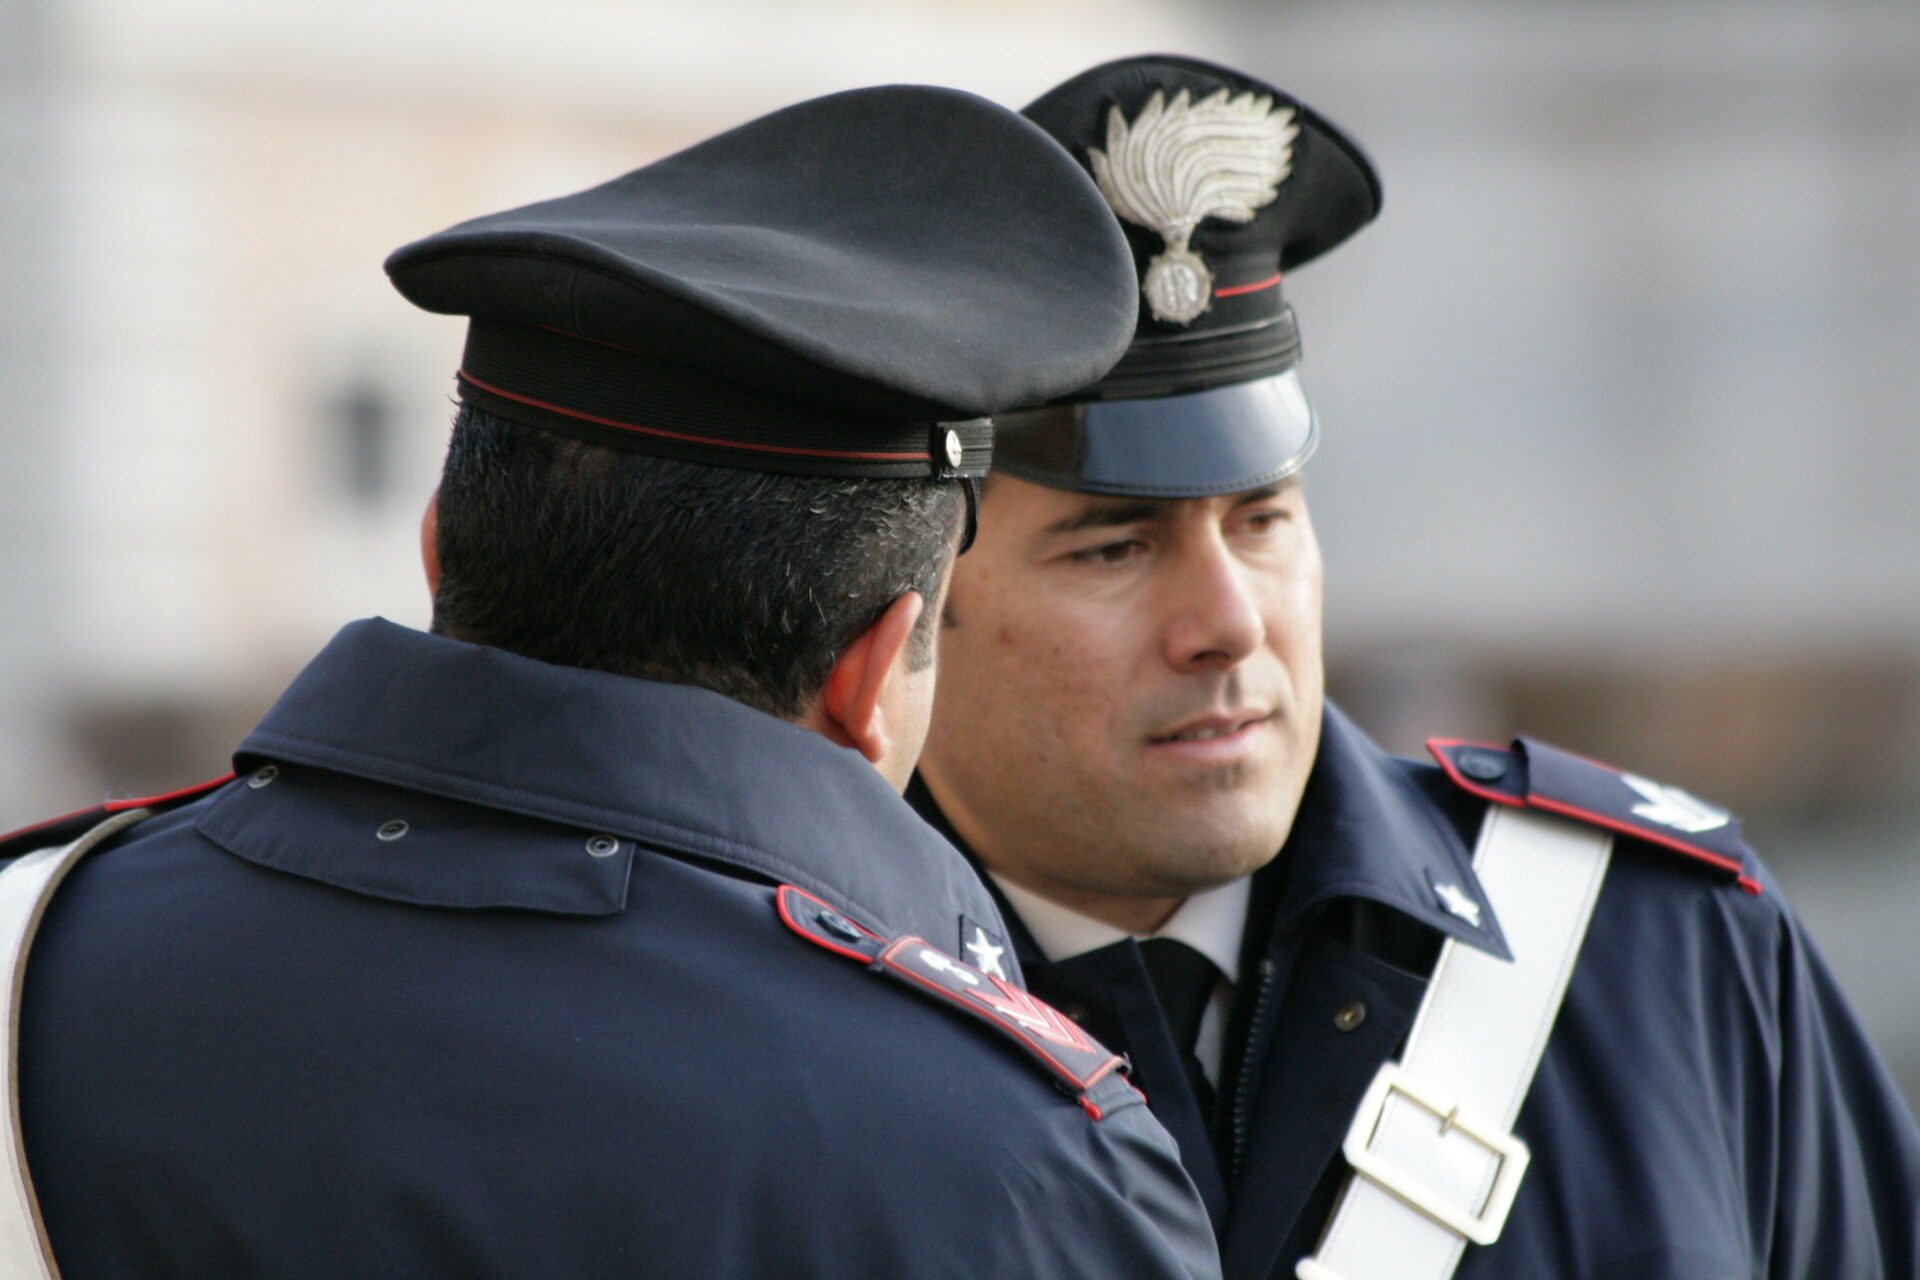 La force italienne des Carabinieri collabore avec la Gendarmerie vaticane dans l'affaire des balles adressées au pape | © Peter Reed/Flickr/CC BY-NC 2.0